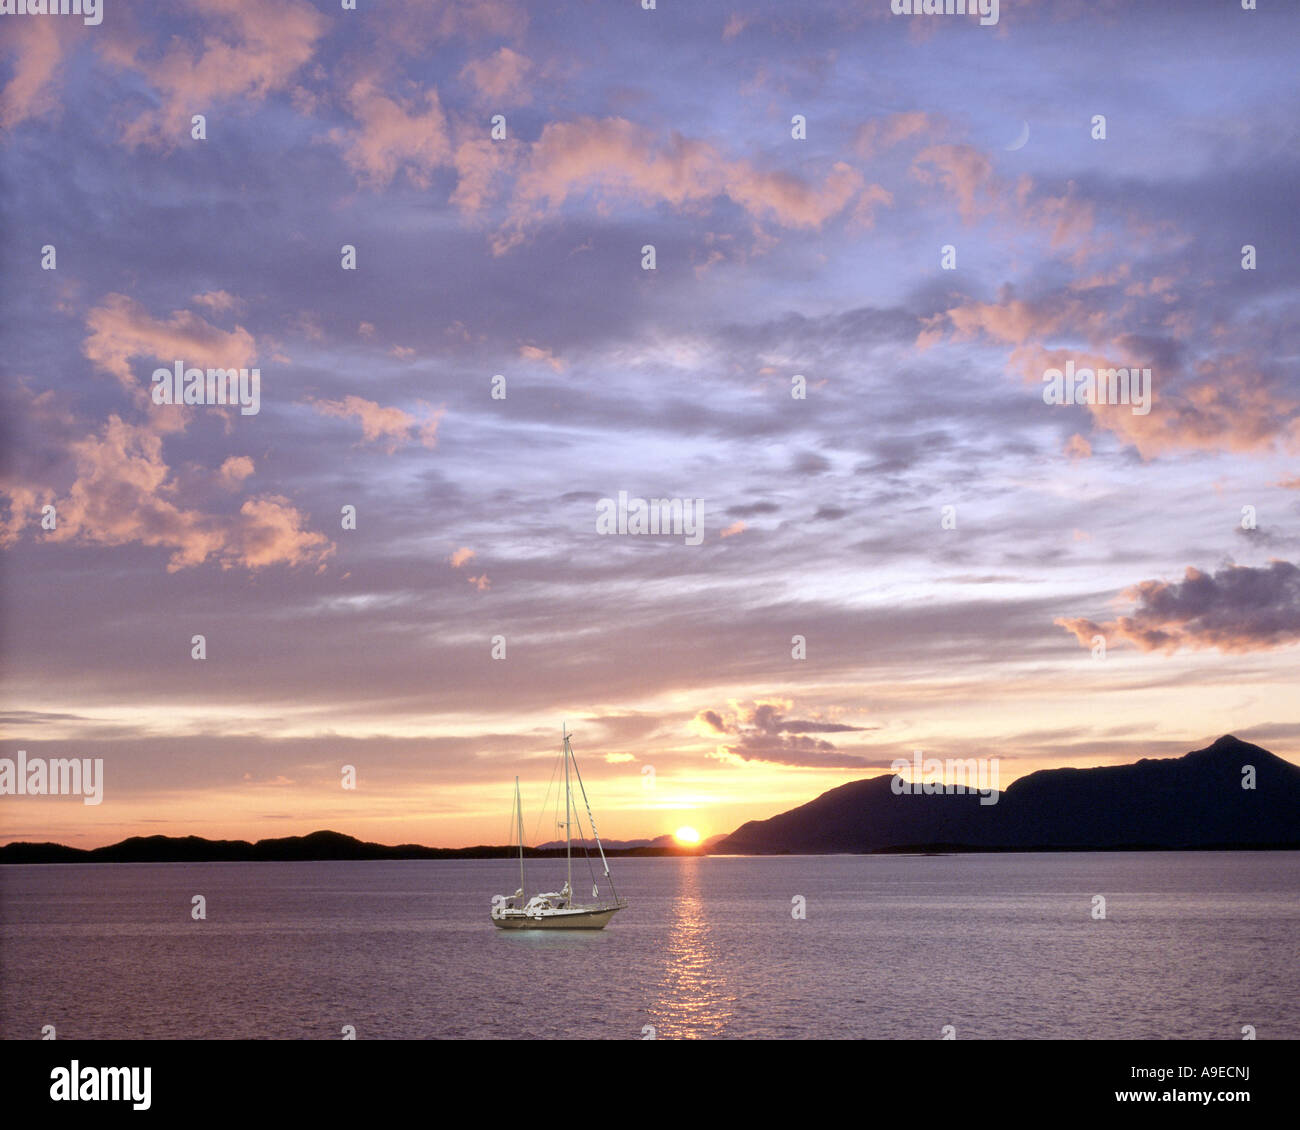 CA - BRITISH COLUMBIA: Sunset over Lake Atlin Stock Photo